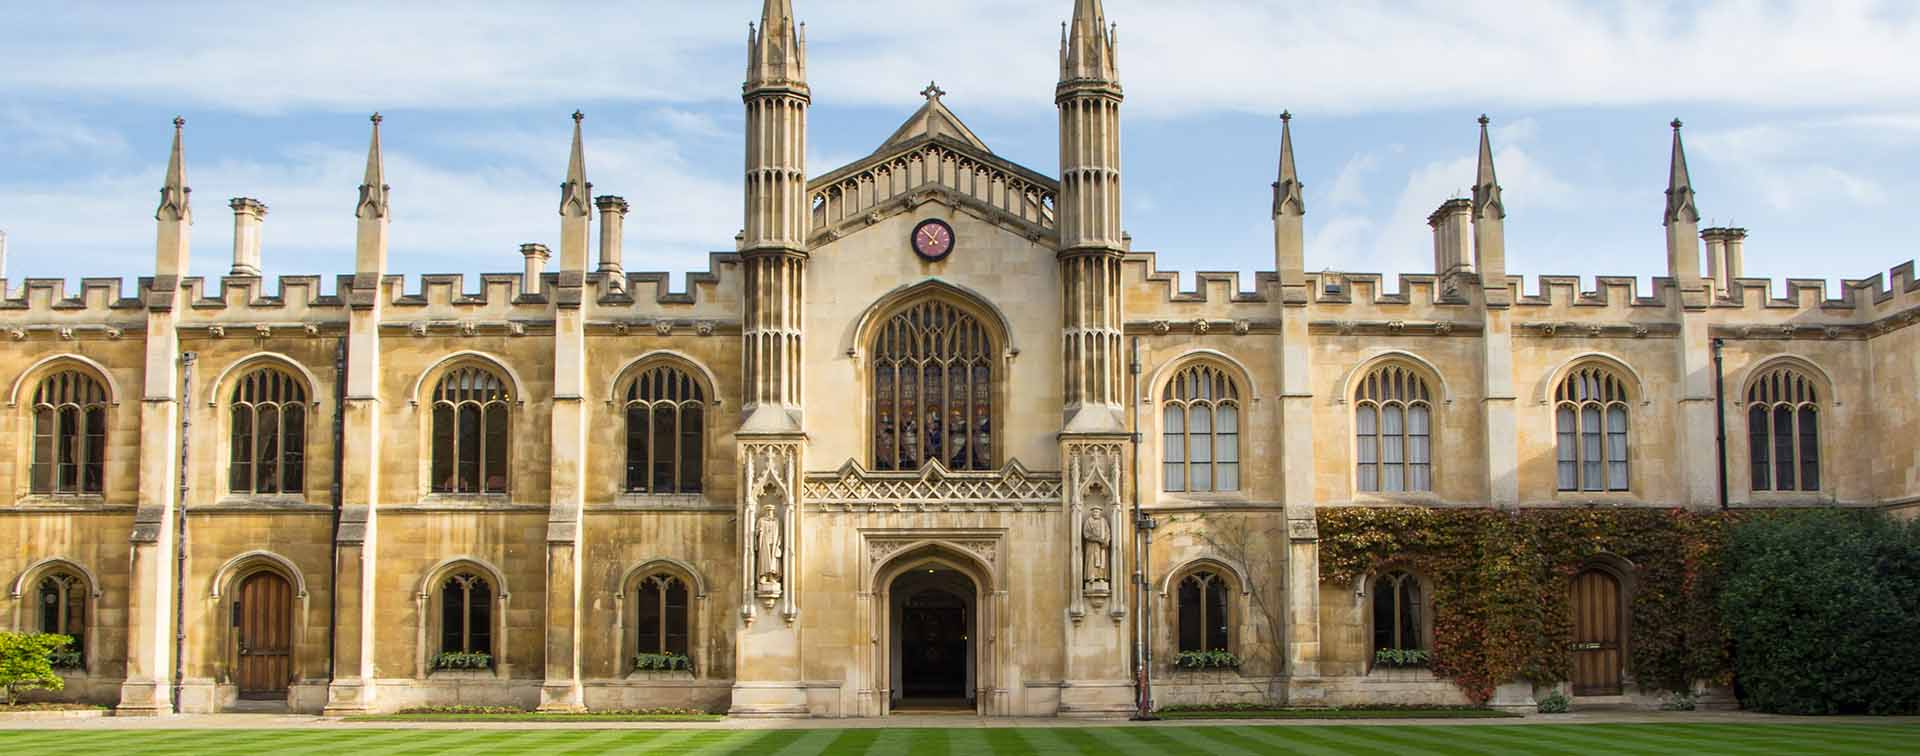 Historic college building in Cambridge, United Kingdom